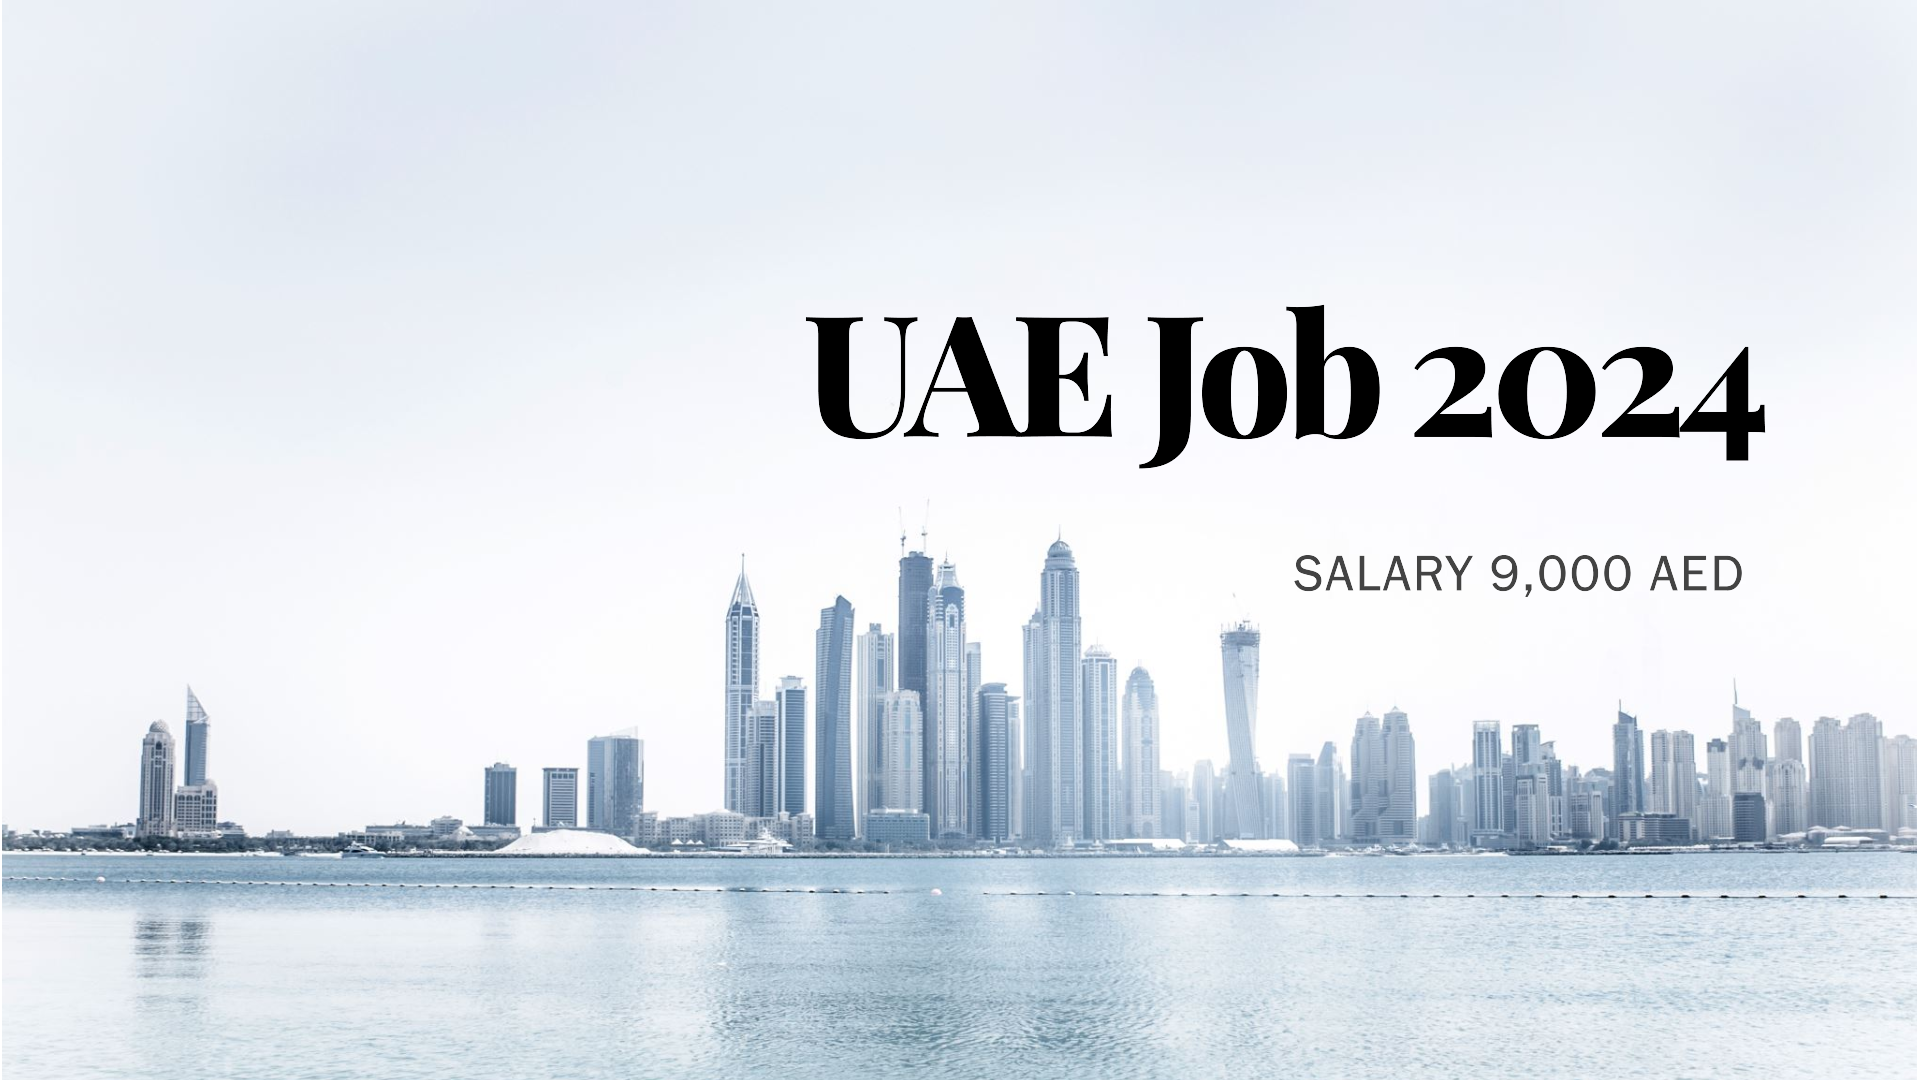 UAE job 2024 | Salary 9,000 AED